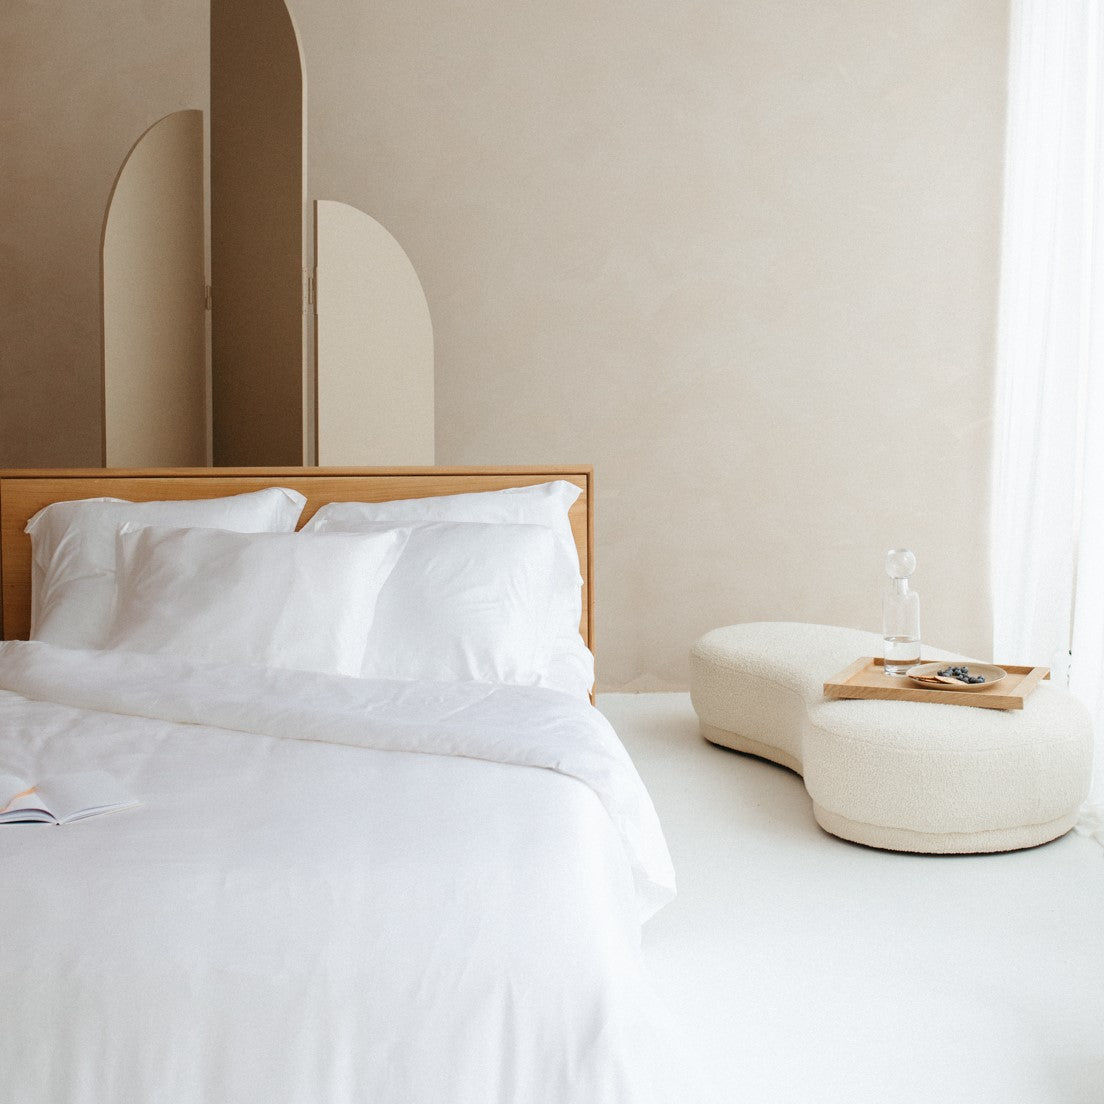 Een bed in een mooie slaapkamer met wit bamboe beddengoed. Het bed heeft vier witte bamboe kussenslopen.